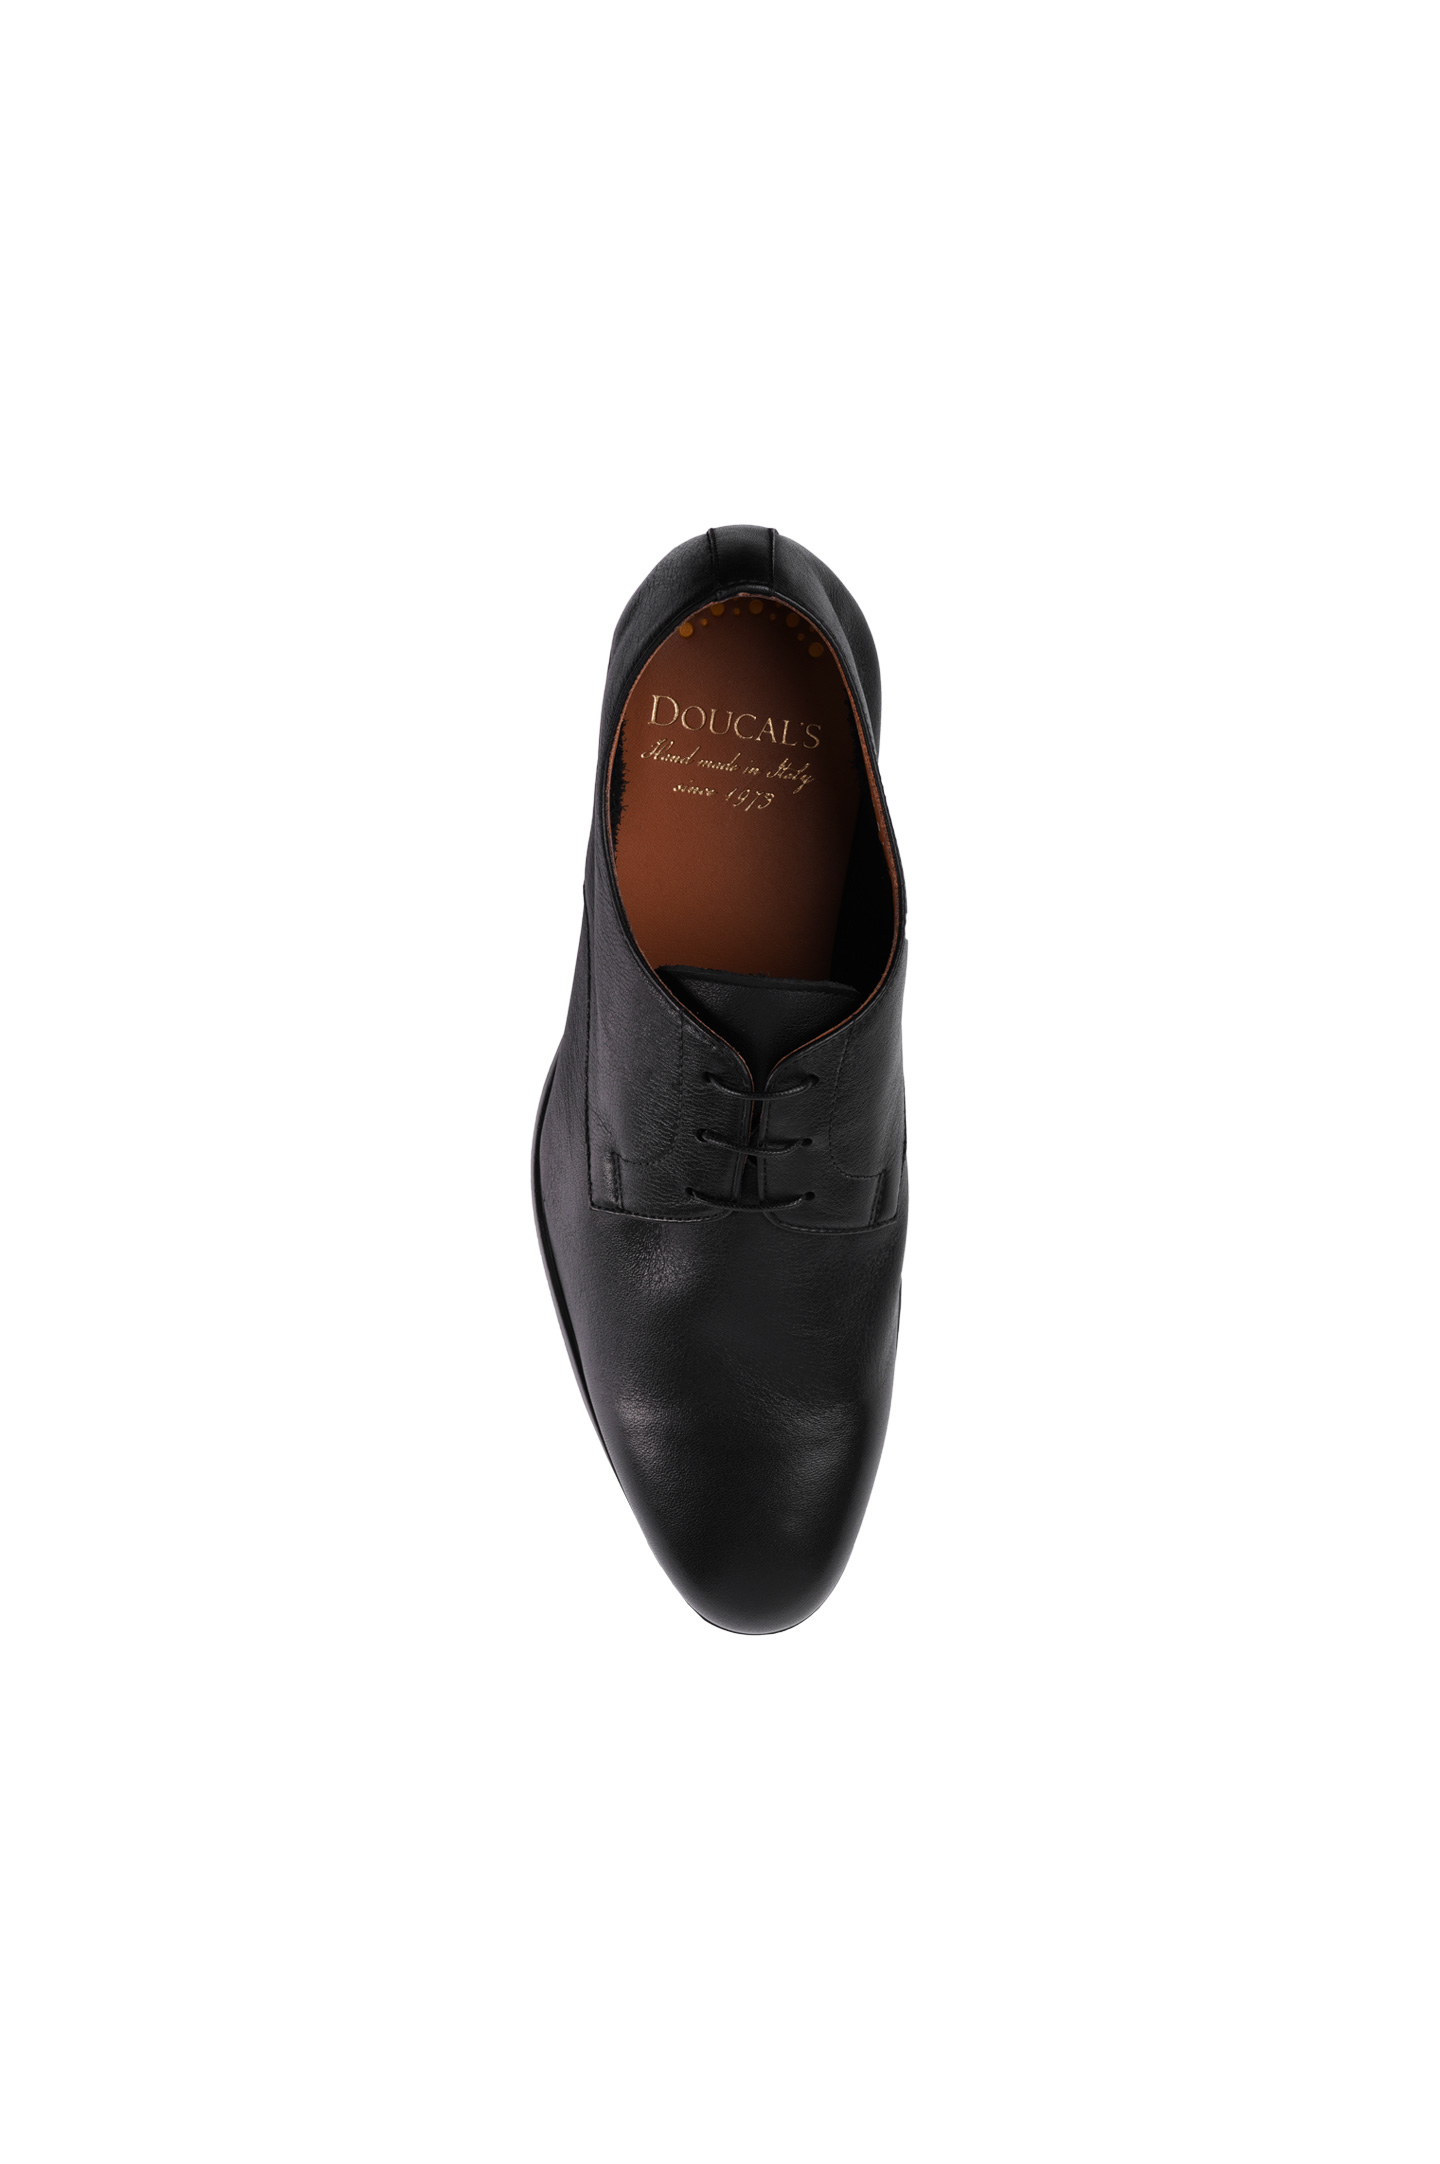 Туфли DOUCAL'S DU1252OSLOUZ065, цвет: Черный, Мужской